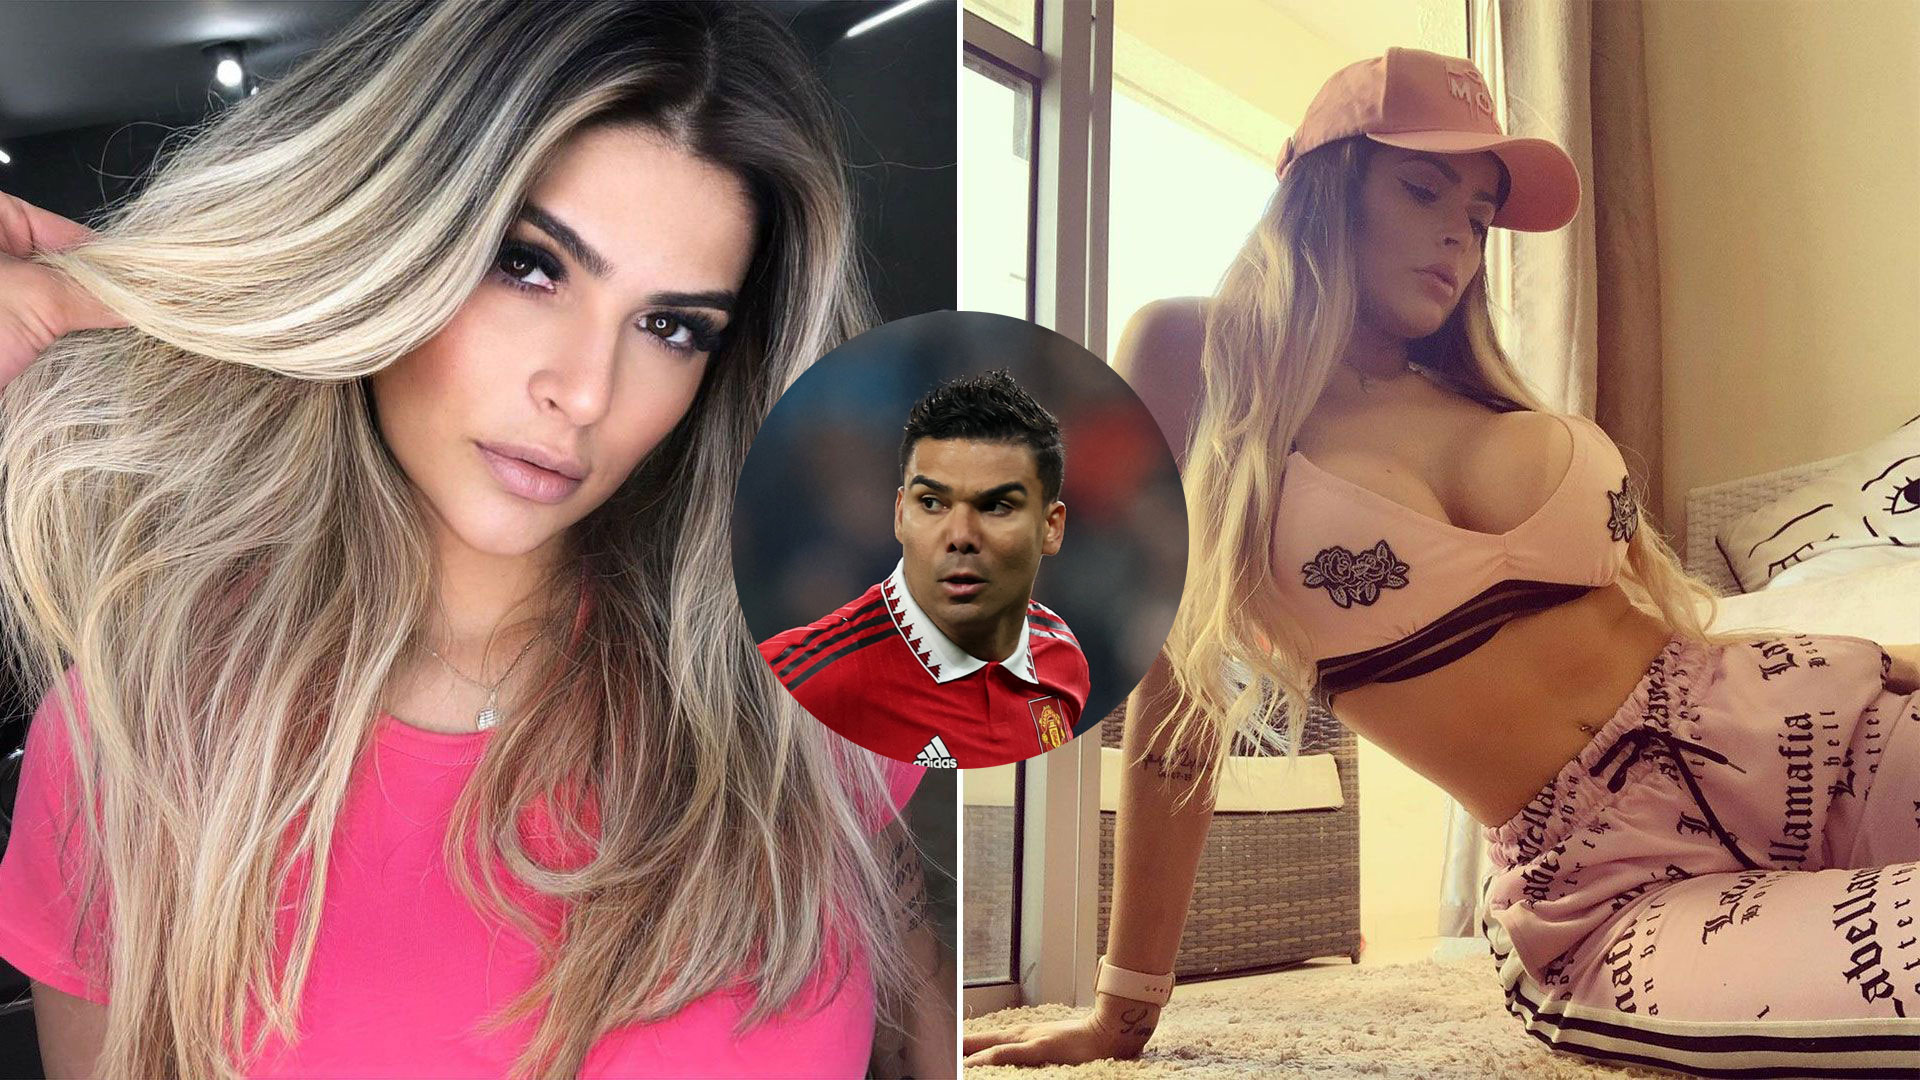 La estrella brasileña que fue acusada de infidelidad y el furioso descargo de su esposa por una comprometedora foto: “Sé que no es él”